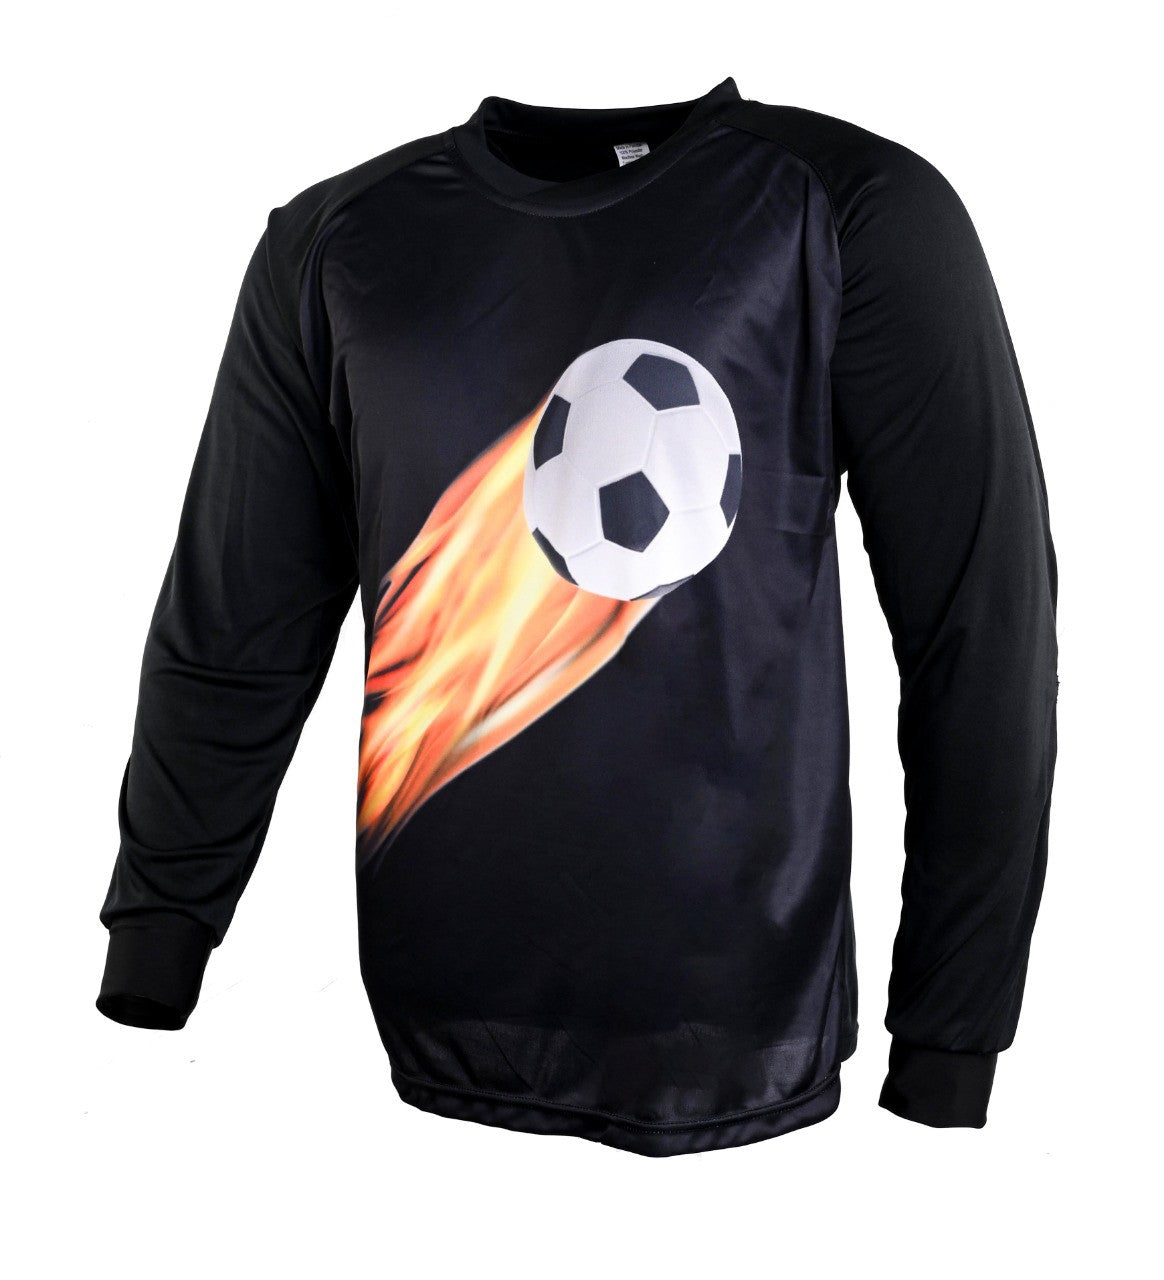 soccer goalie shirt